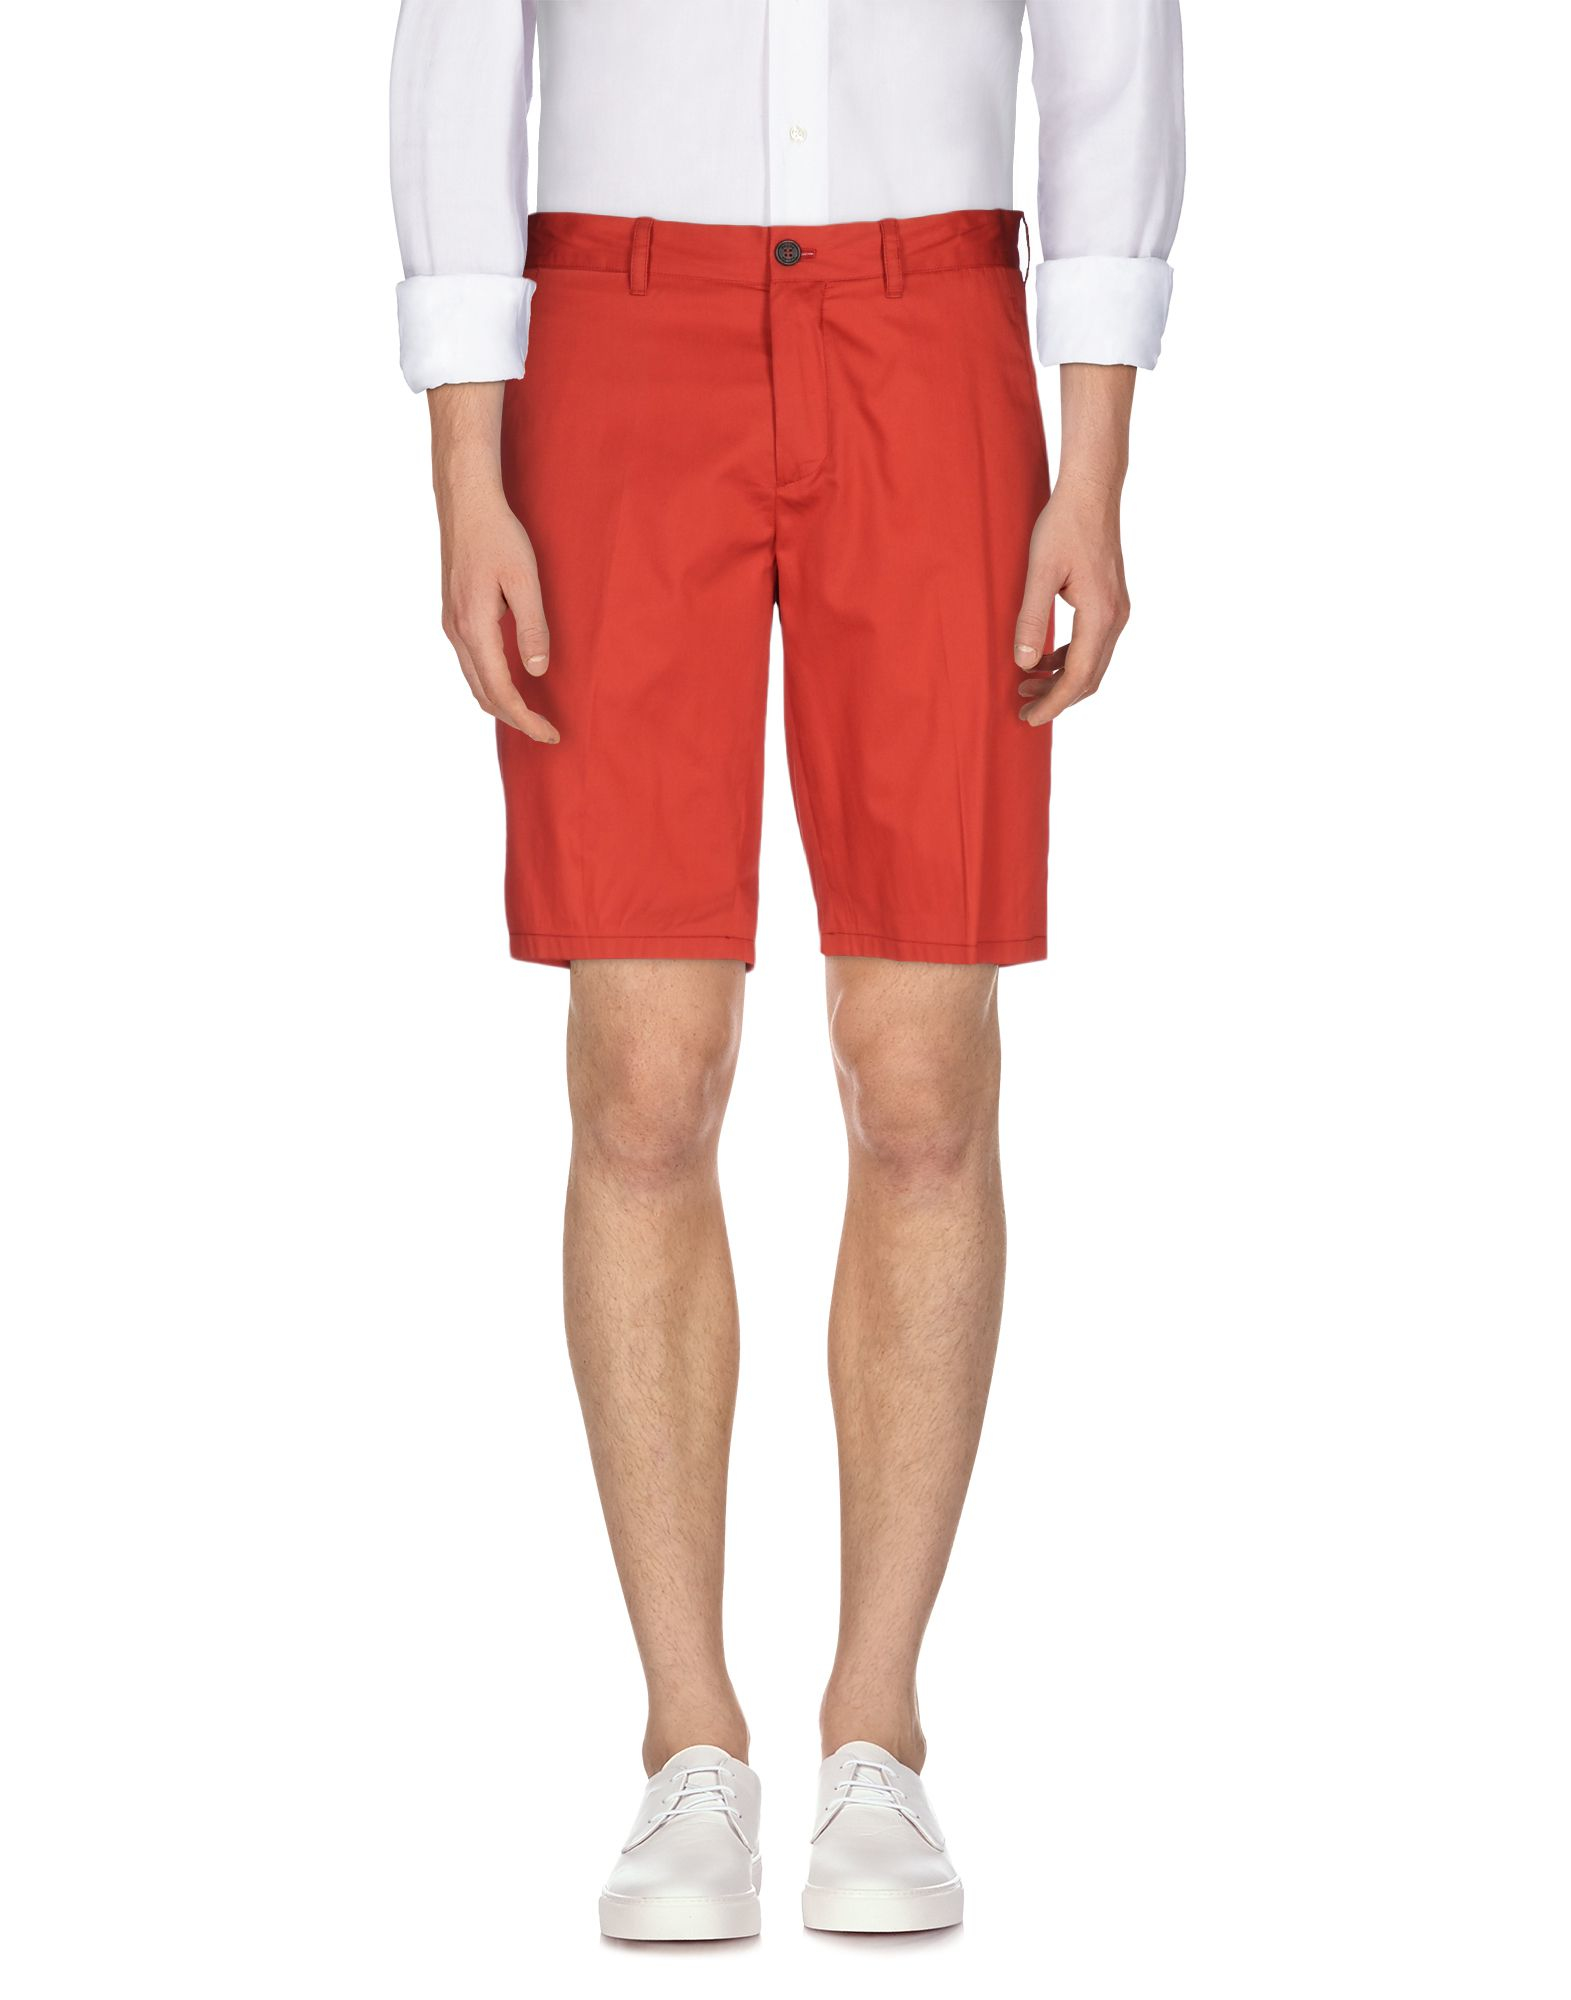 Lyst - Prada Bermuda Shorts in Orange for Men